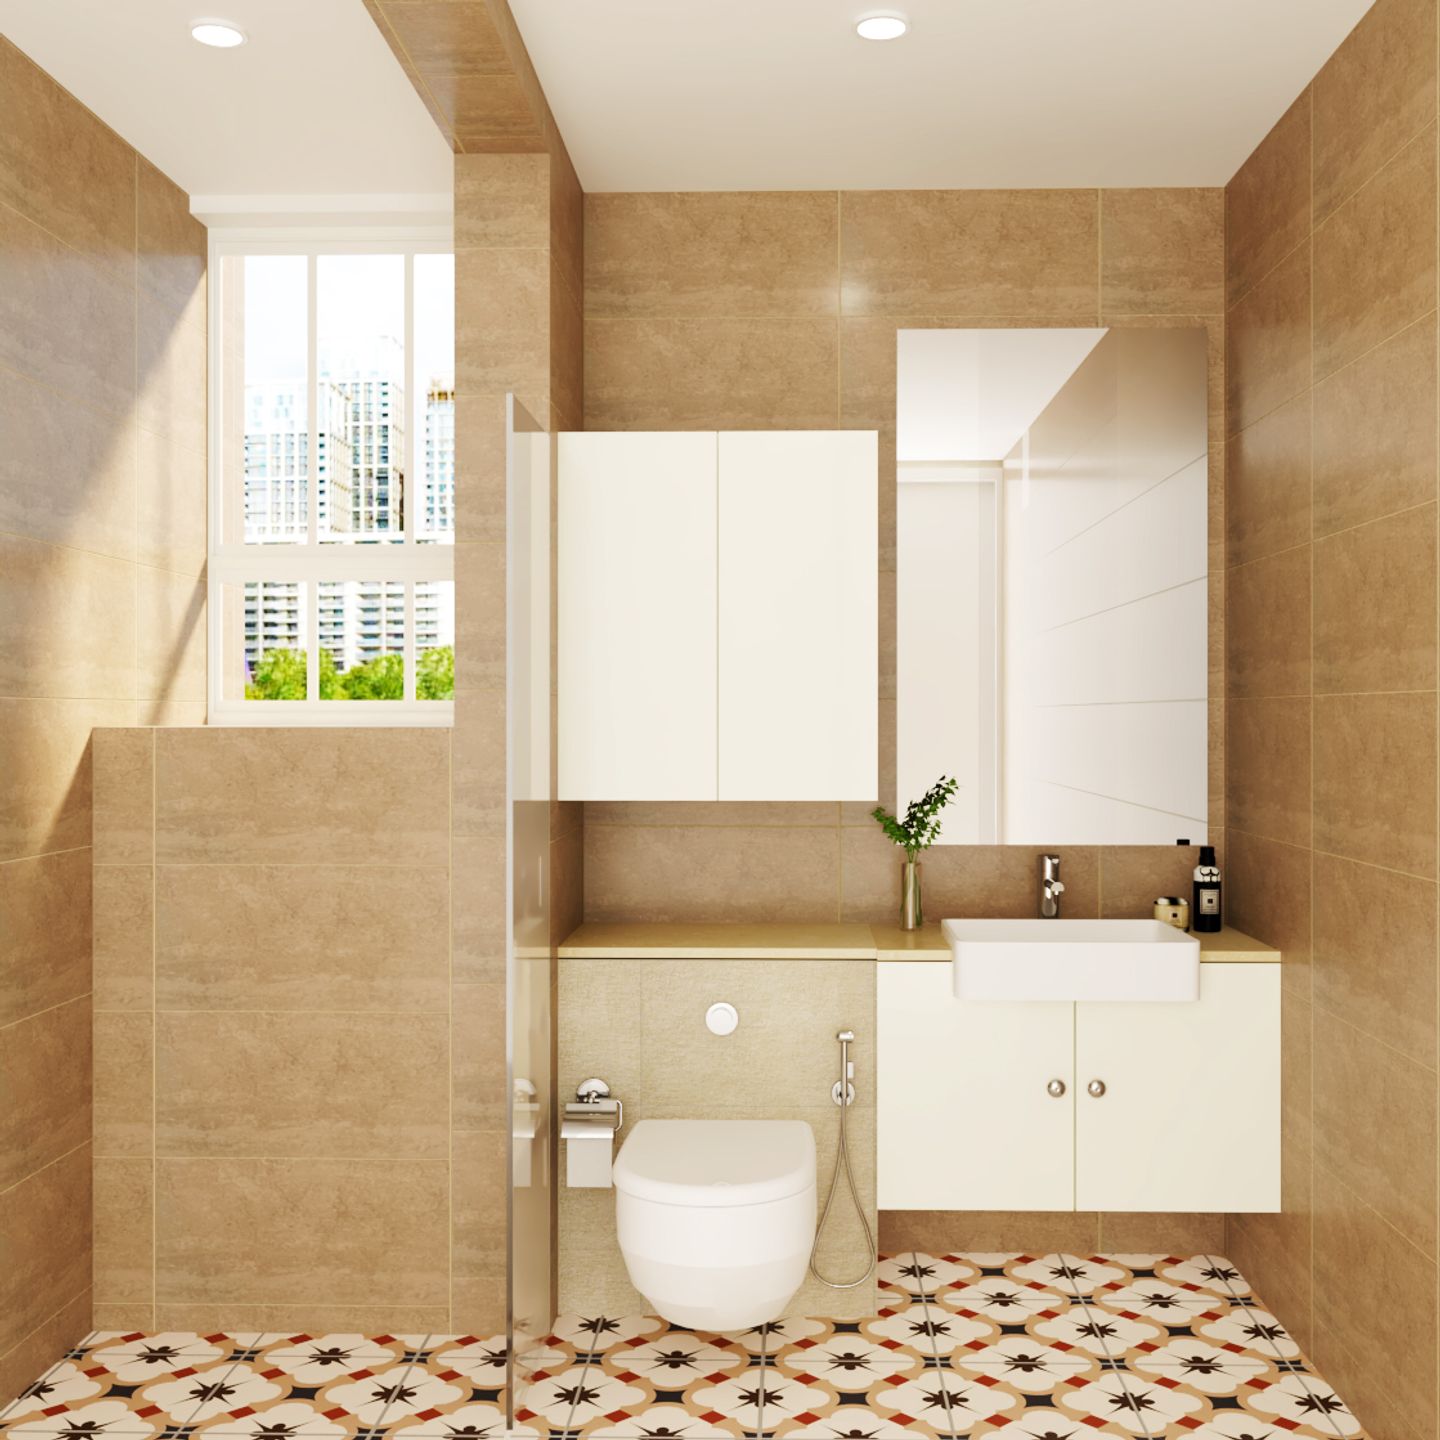 Classic Brown-Toned Bathroom Design - Livspace